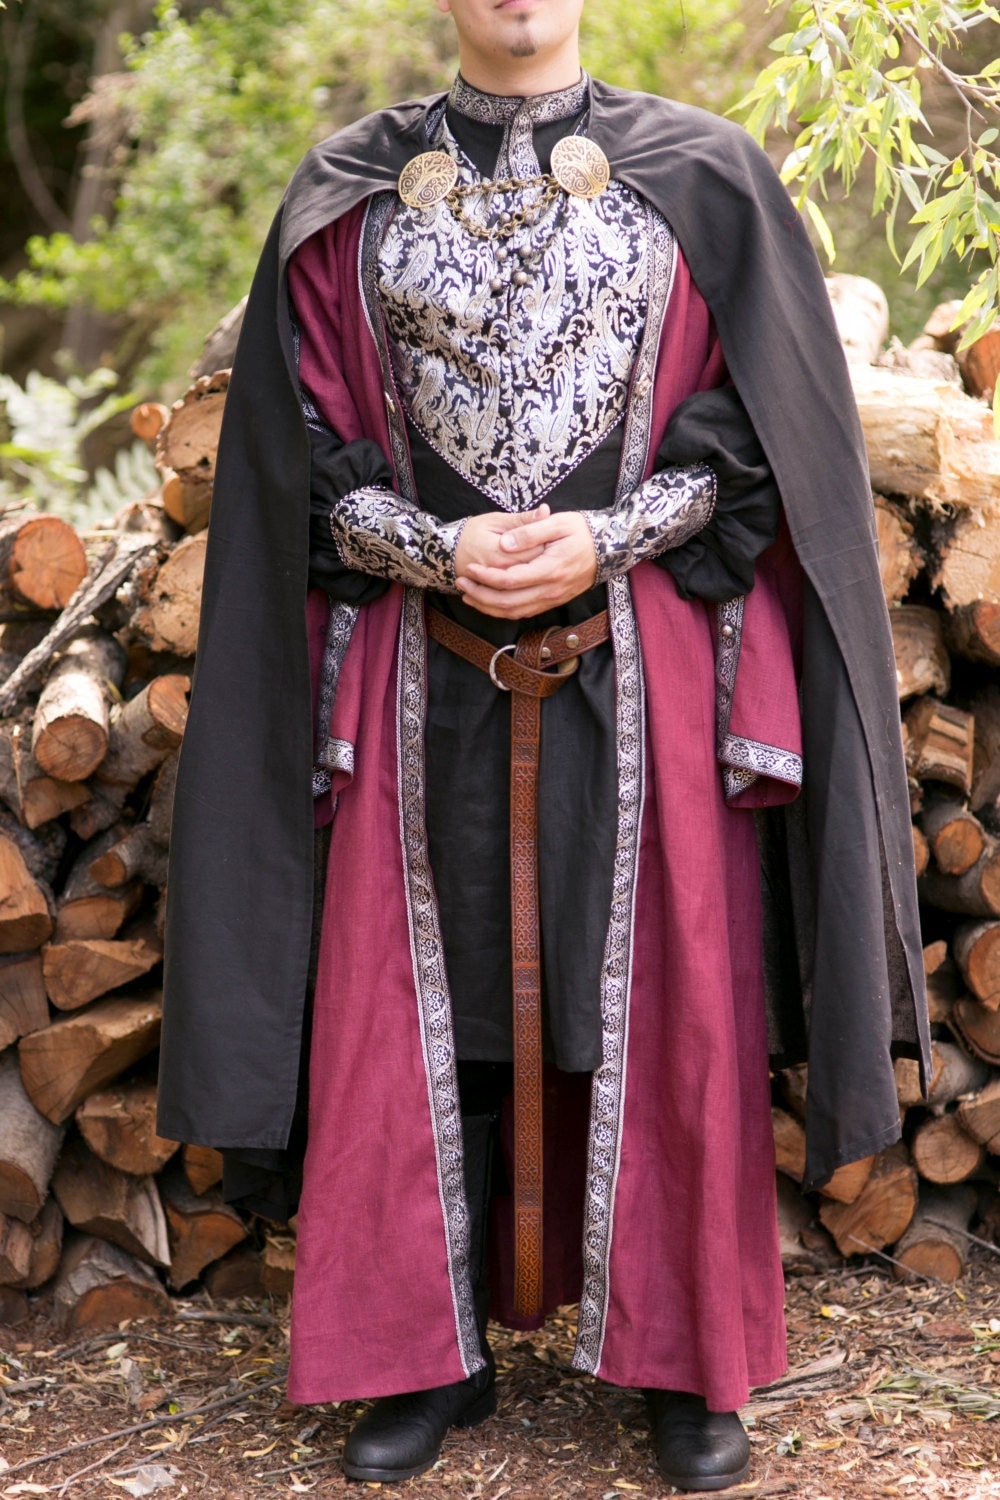 Средневековый костюм мужской